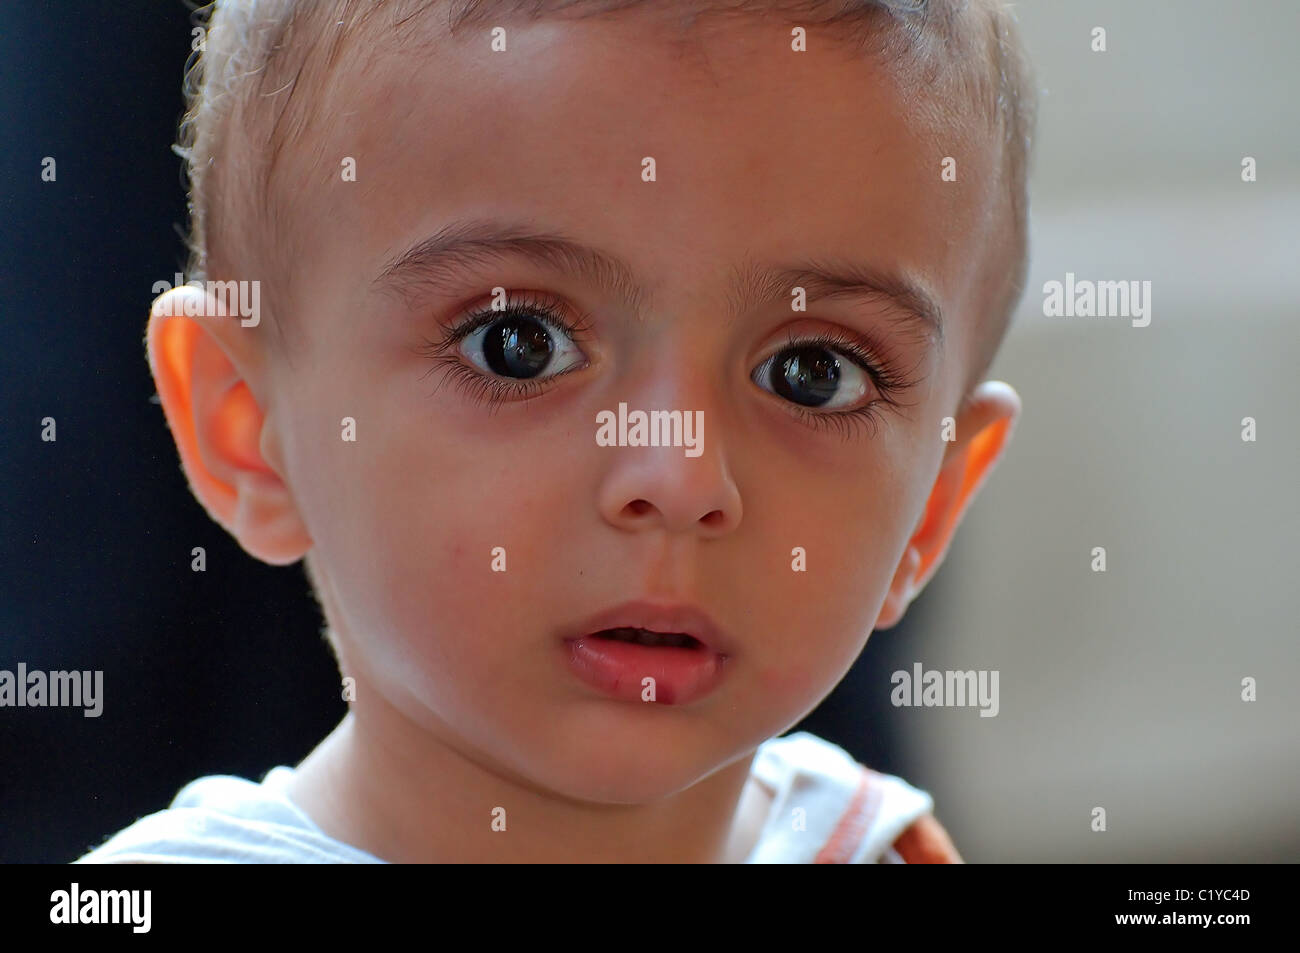 Portrait of a Syrian boy with big, sad eyes, Aleppo, Syria Stock Photo